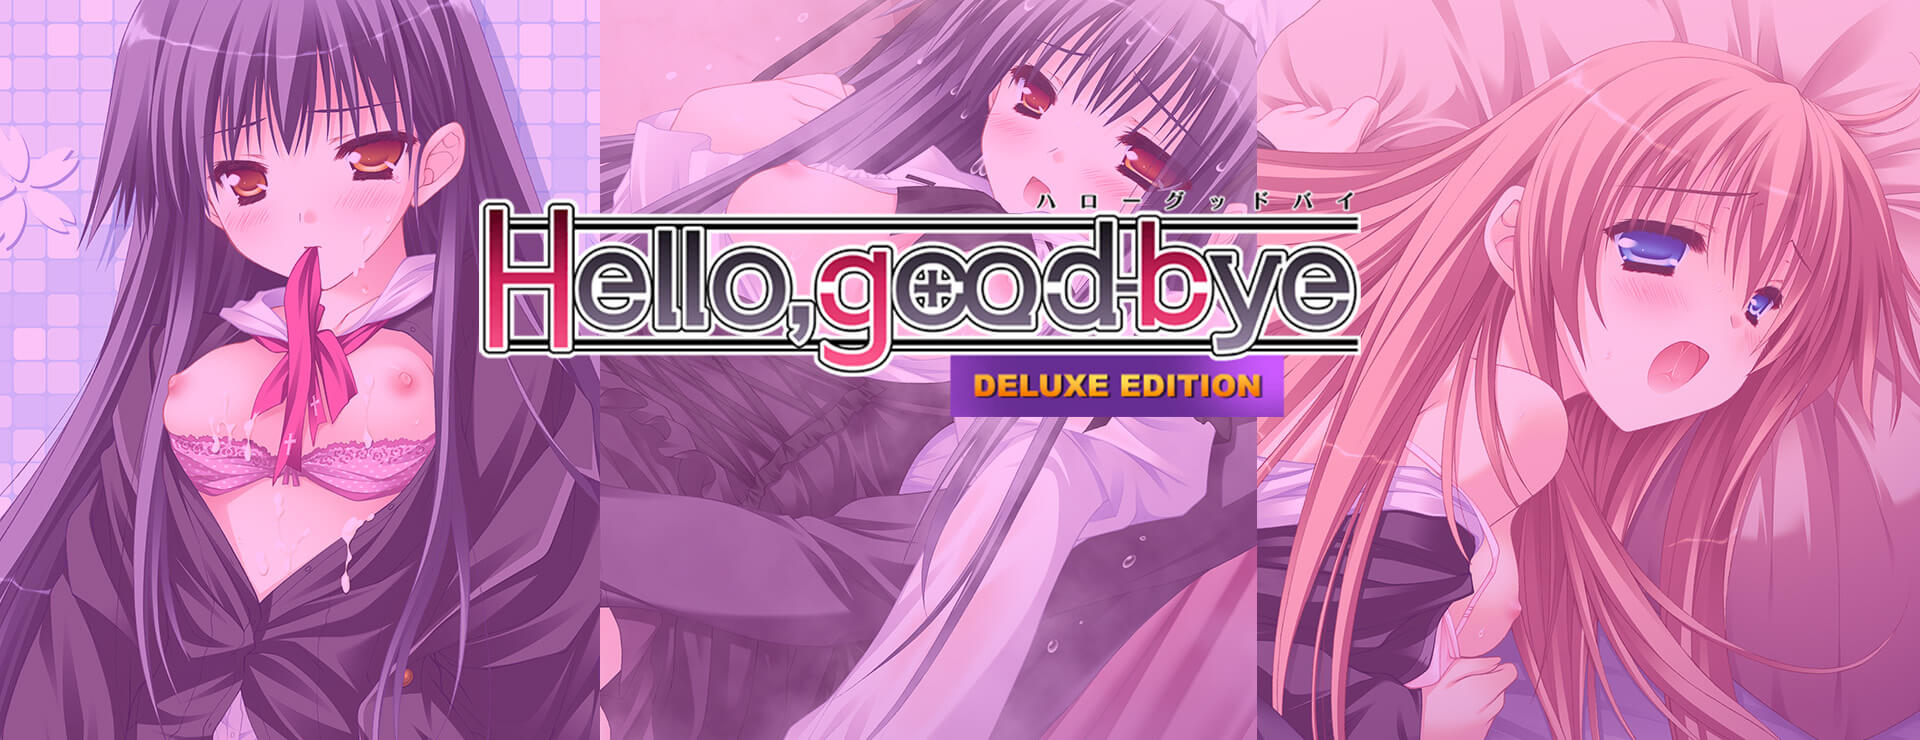 Hello, Goodbye (Deluxe Edition) - Powieść wizualna Gra